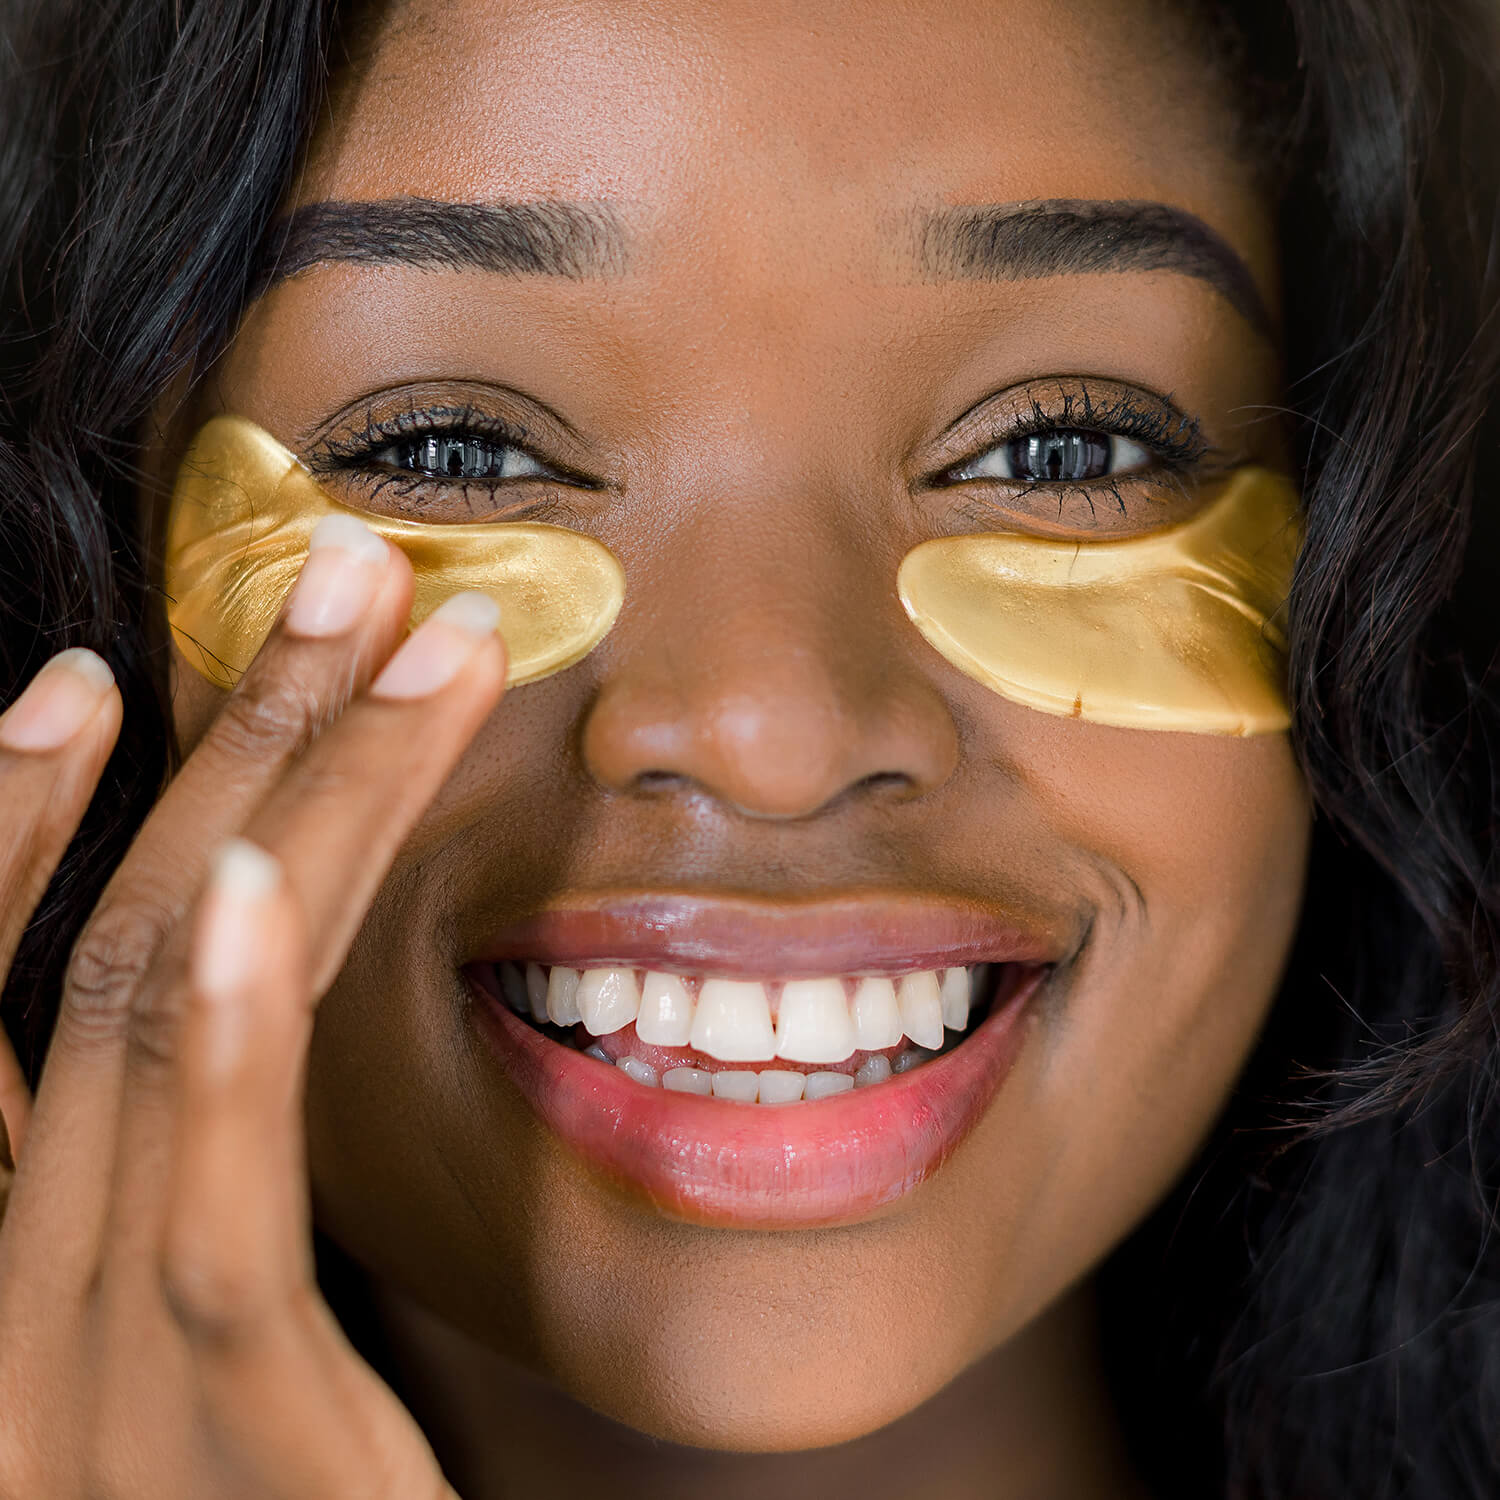 Woman using gold eye mask